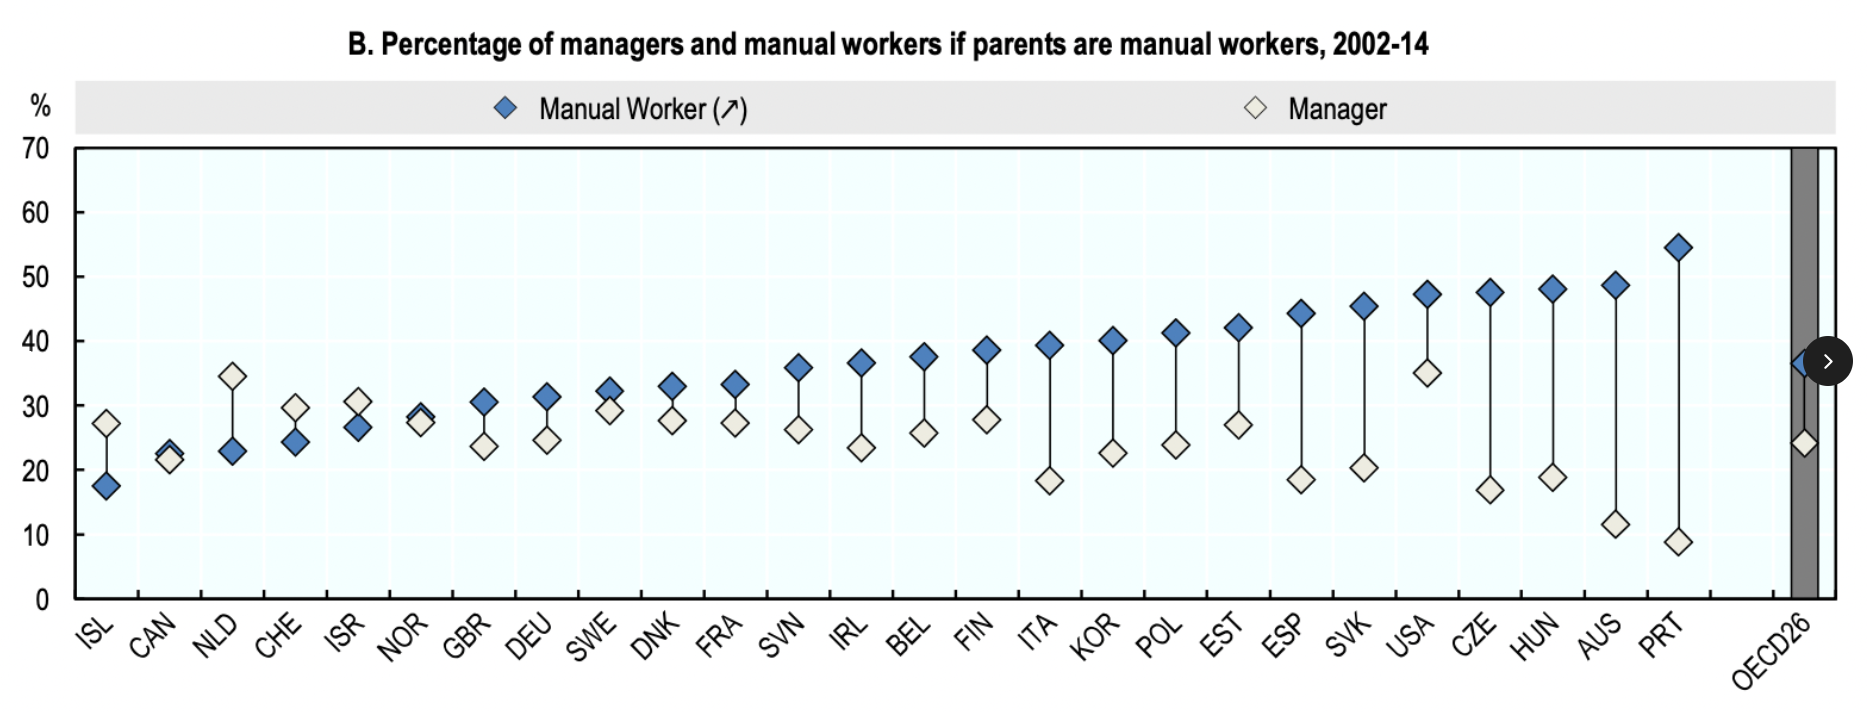 Podíl manažerů a manuálních pracovníků mezi těmi, jejichž rodiče byli manuální pracovníci